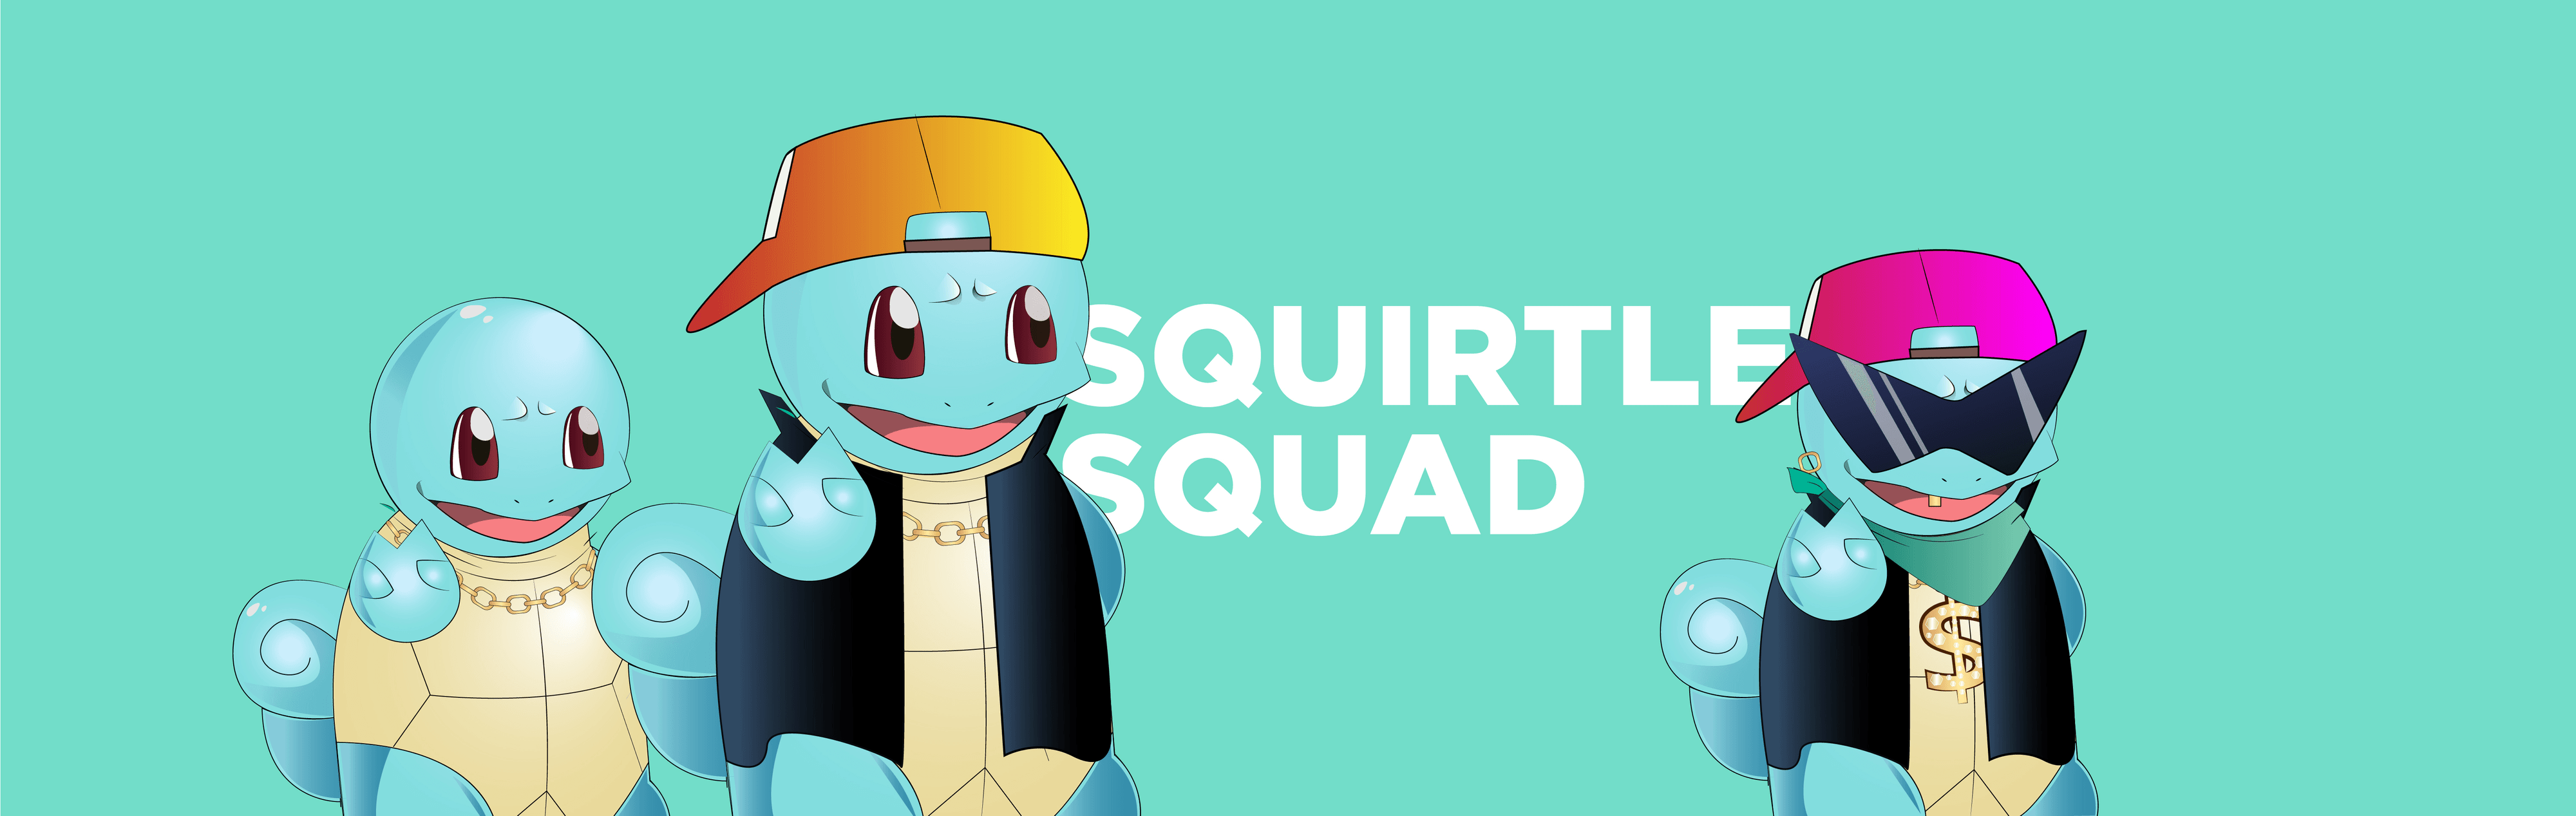 Squirtle_SQUAD_nft bannière